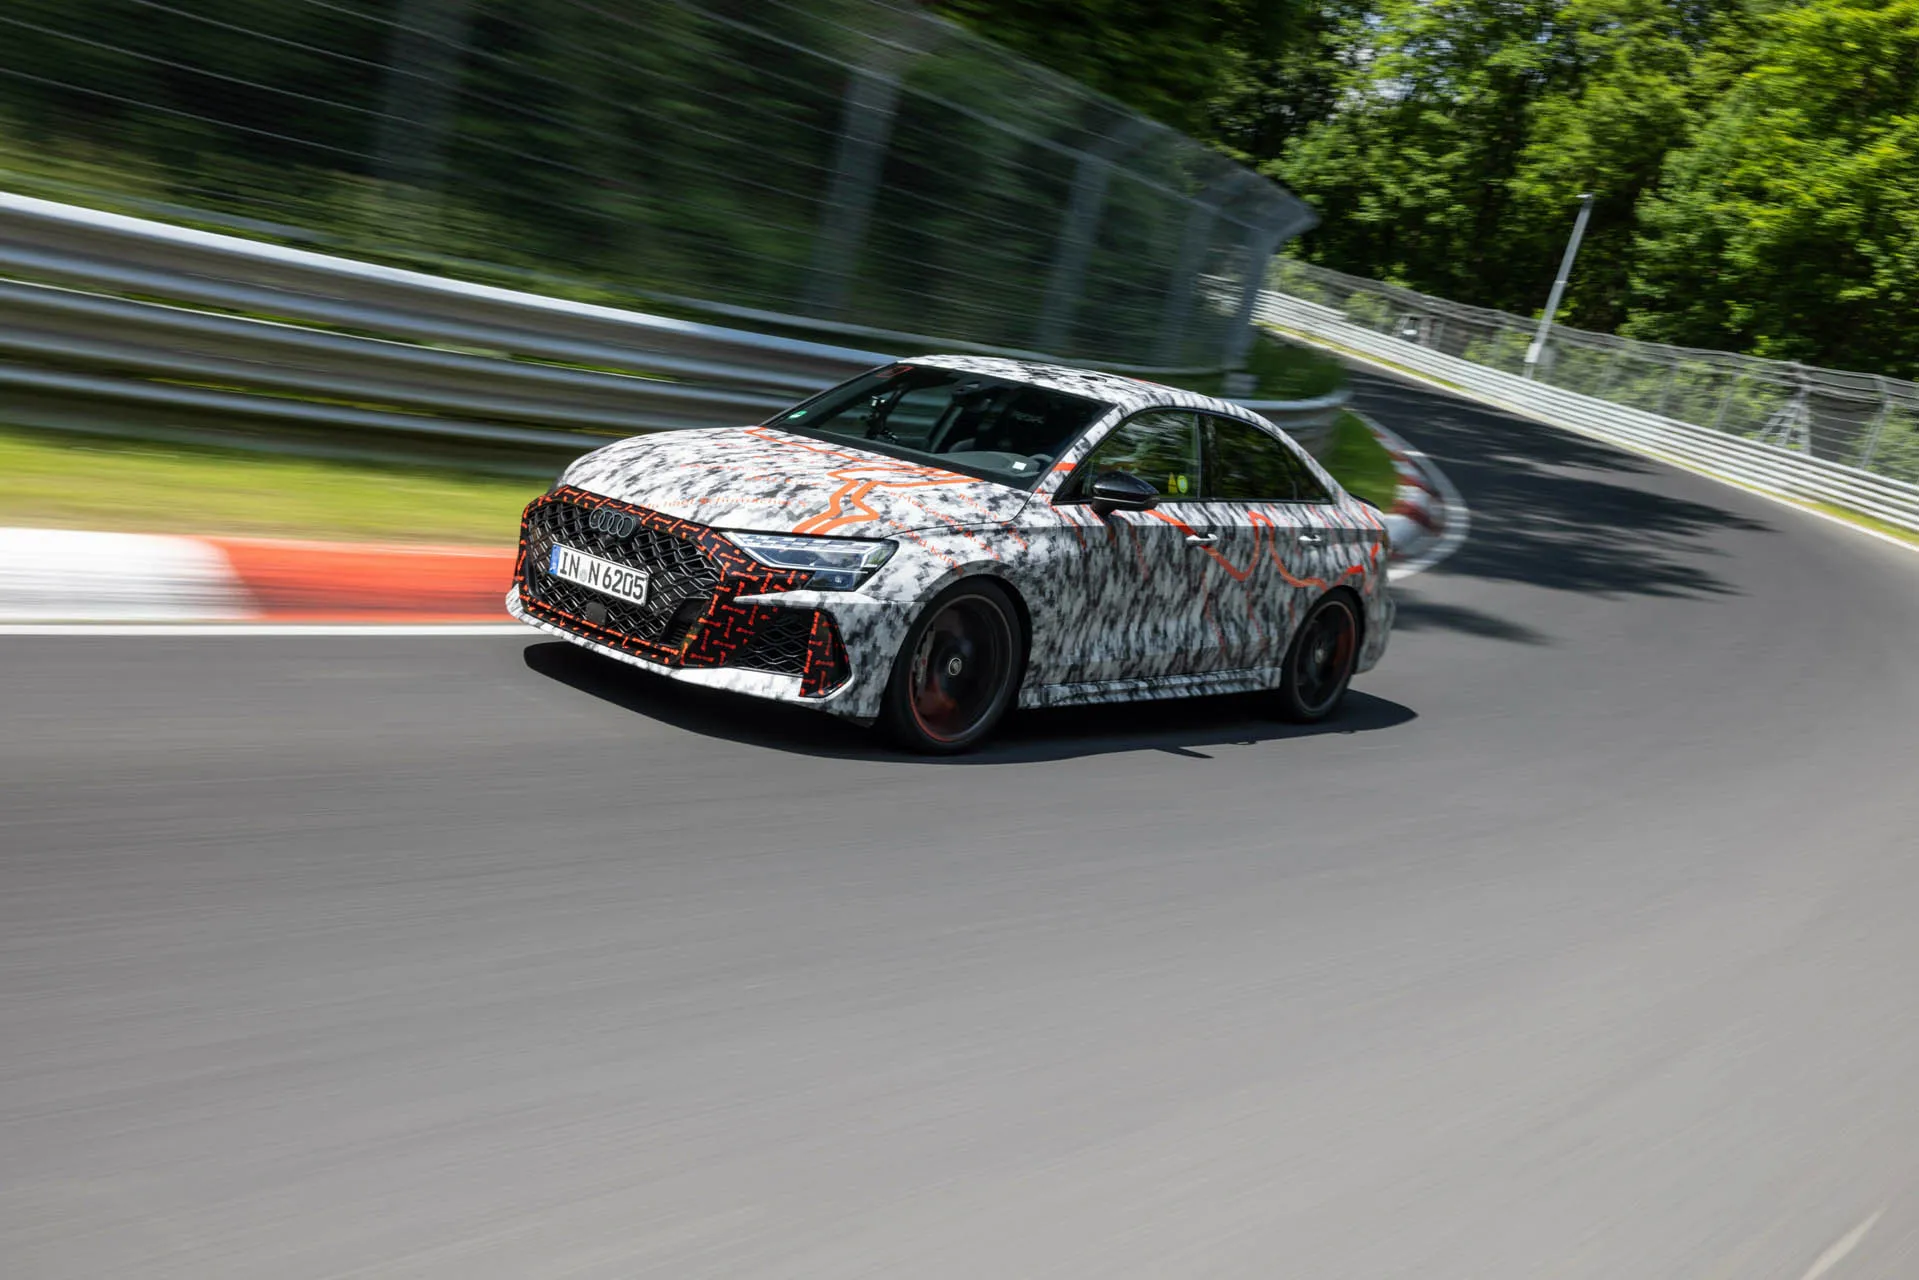 2025 Audi RS 3 Nürburgring lap record